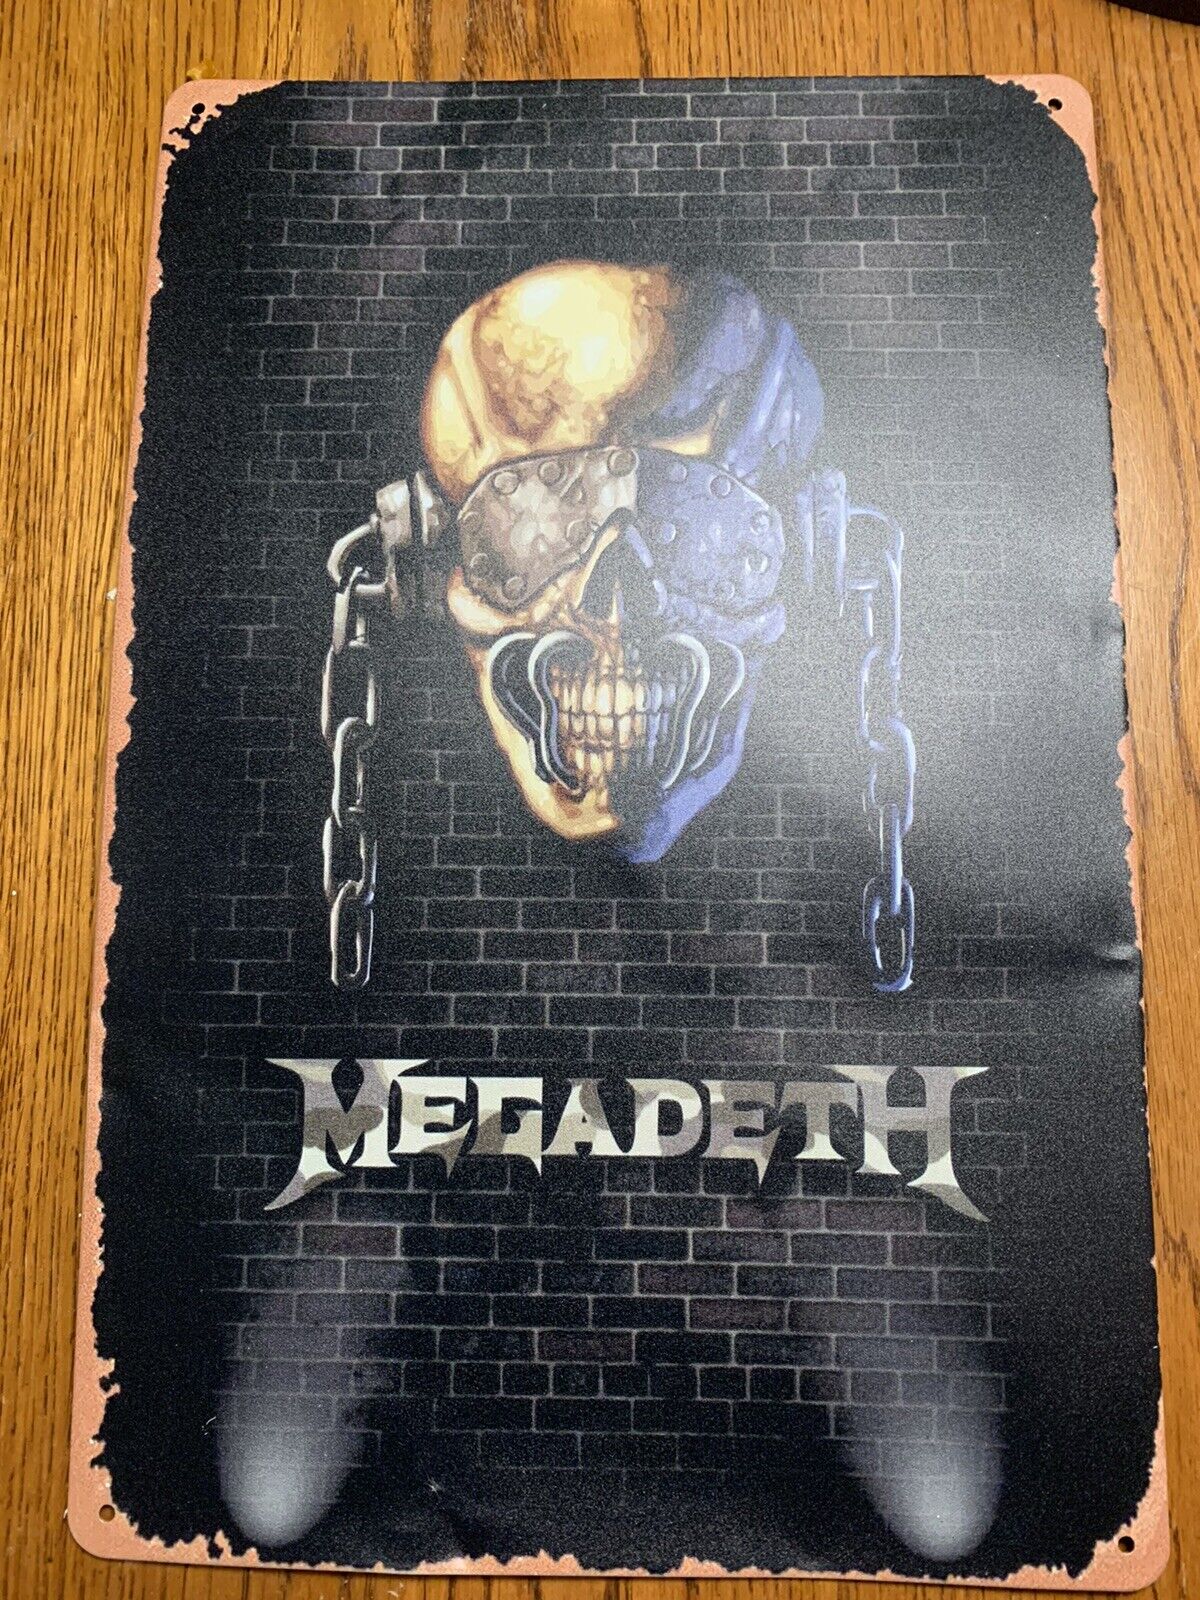 Megadeath Heavy Metal/Rock Tin Metal Sign Man Cave Garage Art Band Music